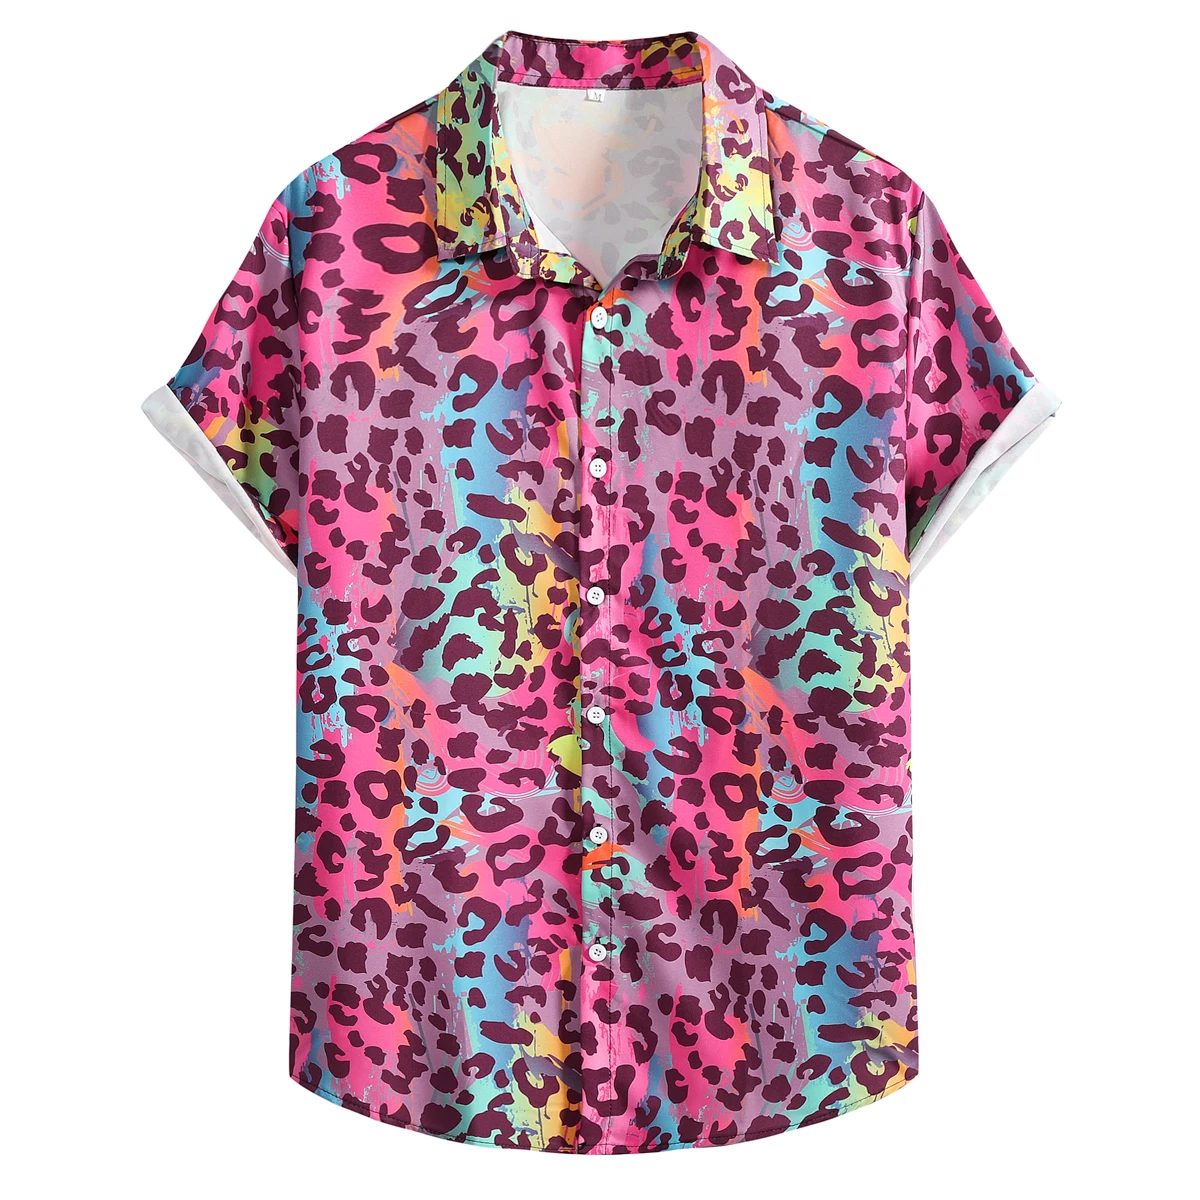 

Рубашка мужская с цветным леопардовым принтом, повседневная Гавайская блузка с коротким рукавом, Пляжная тропическая рубашка на пуговицах,...